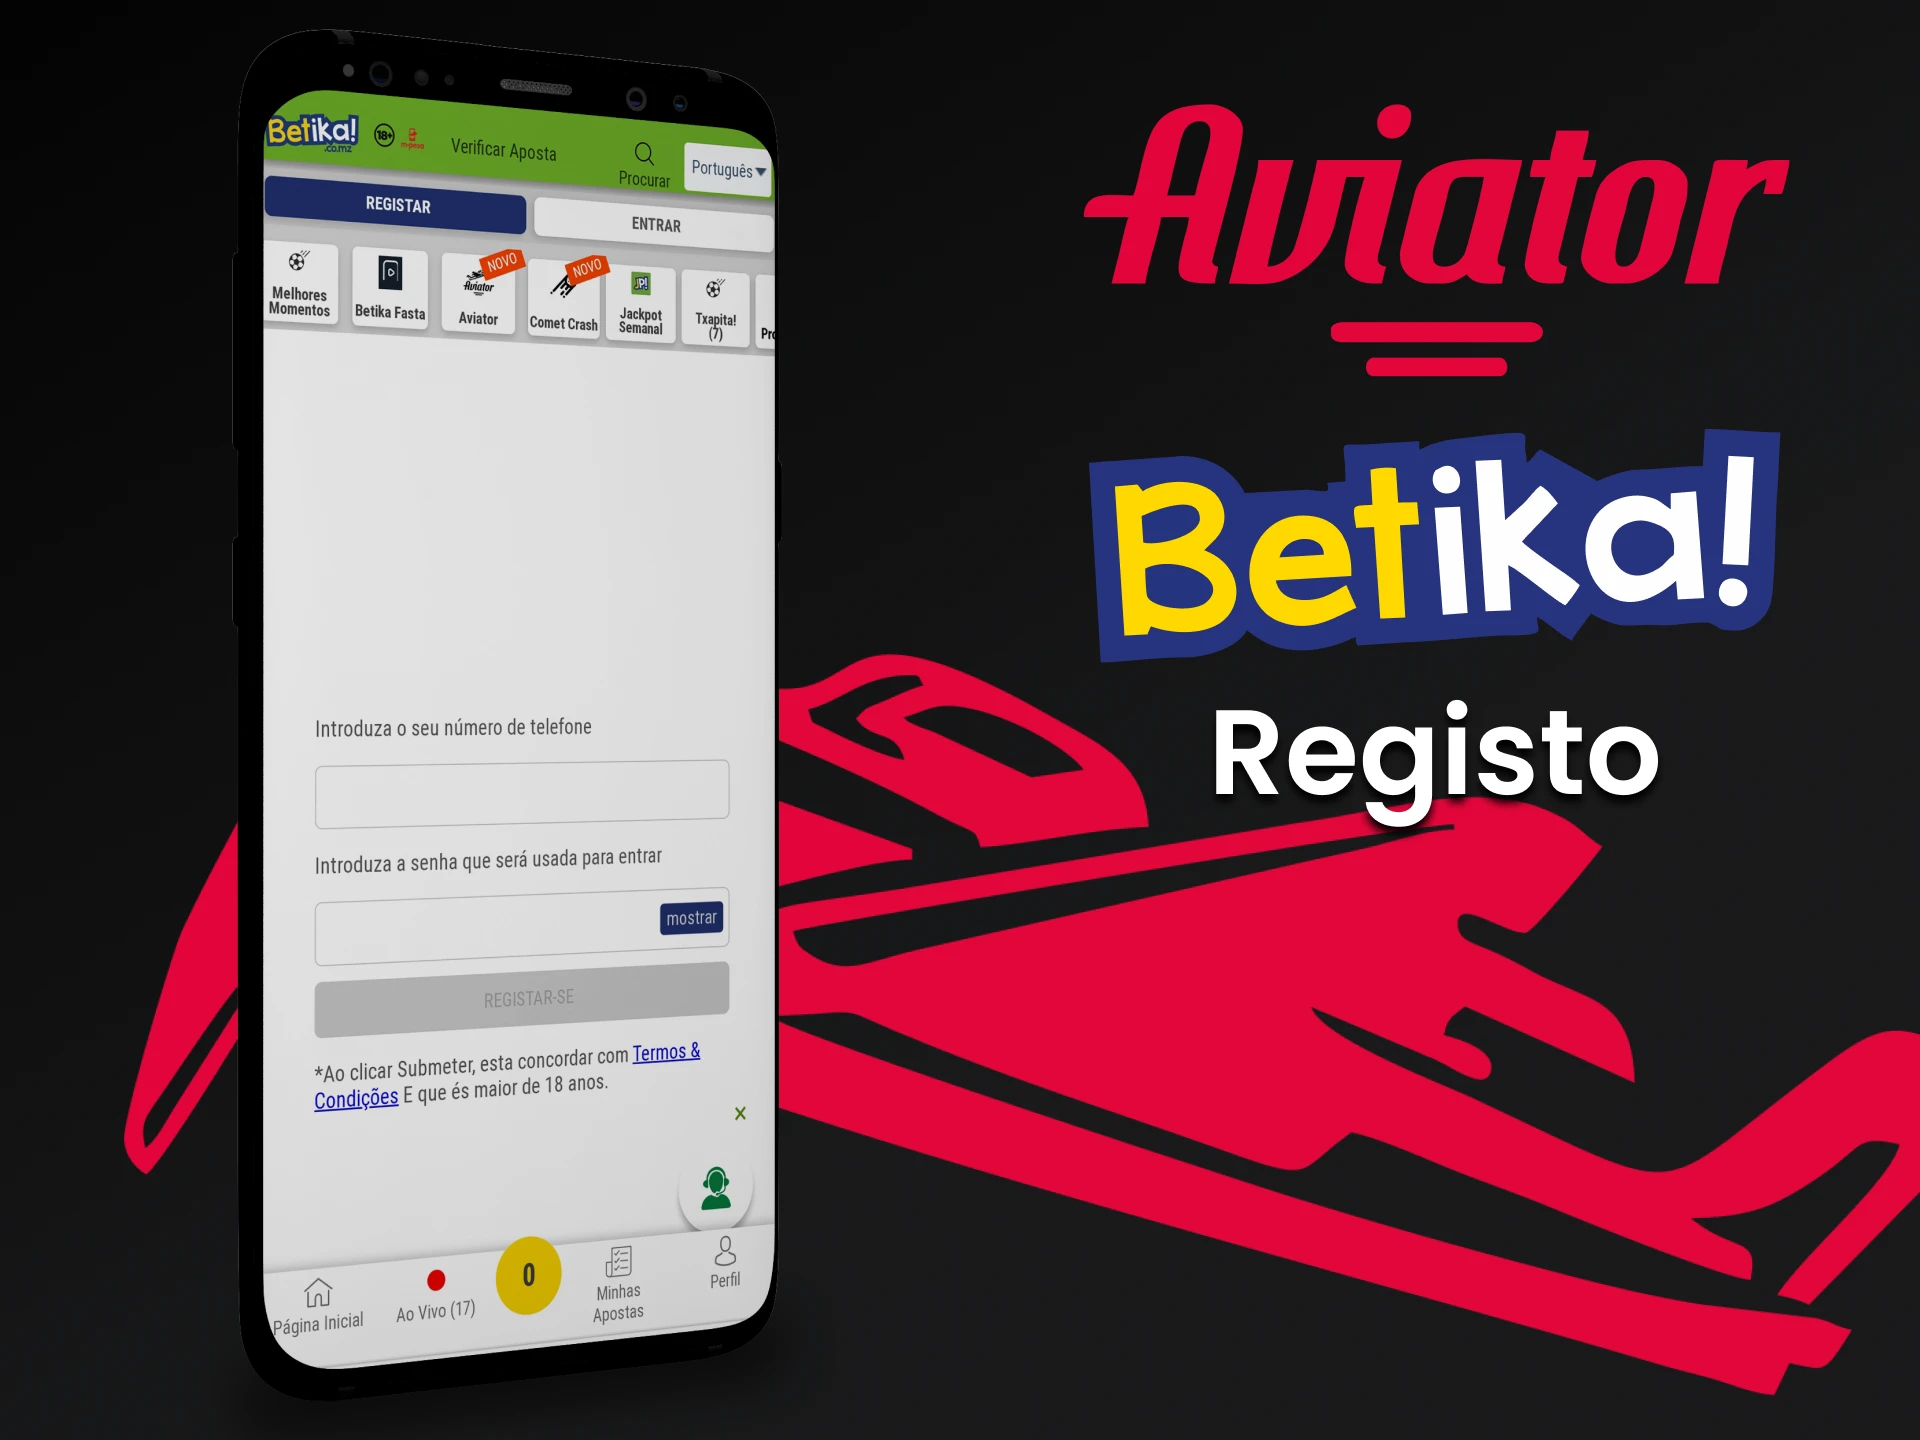 Registre-se no aplicativo Betika para jogar Aviator.